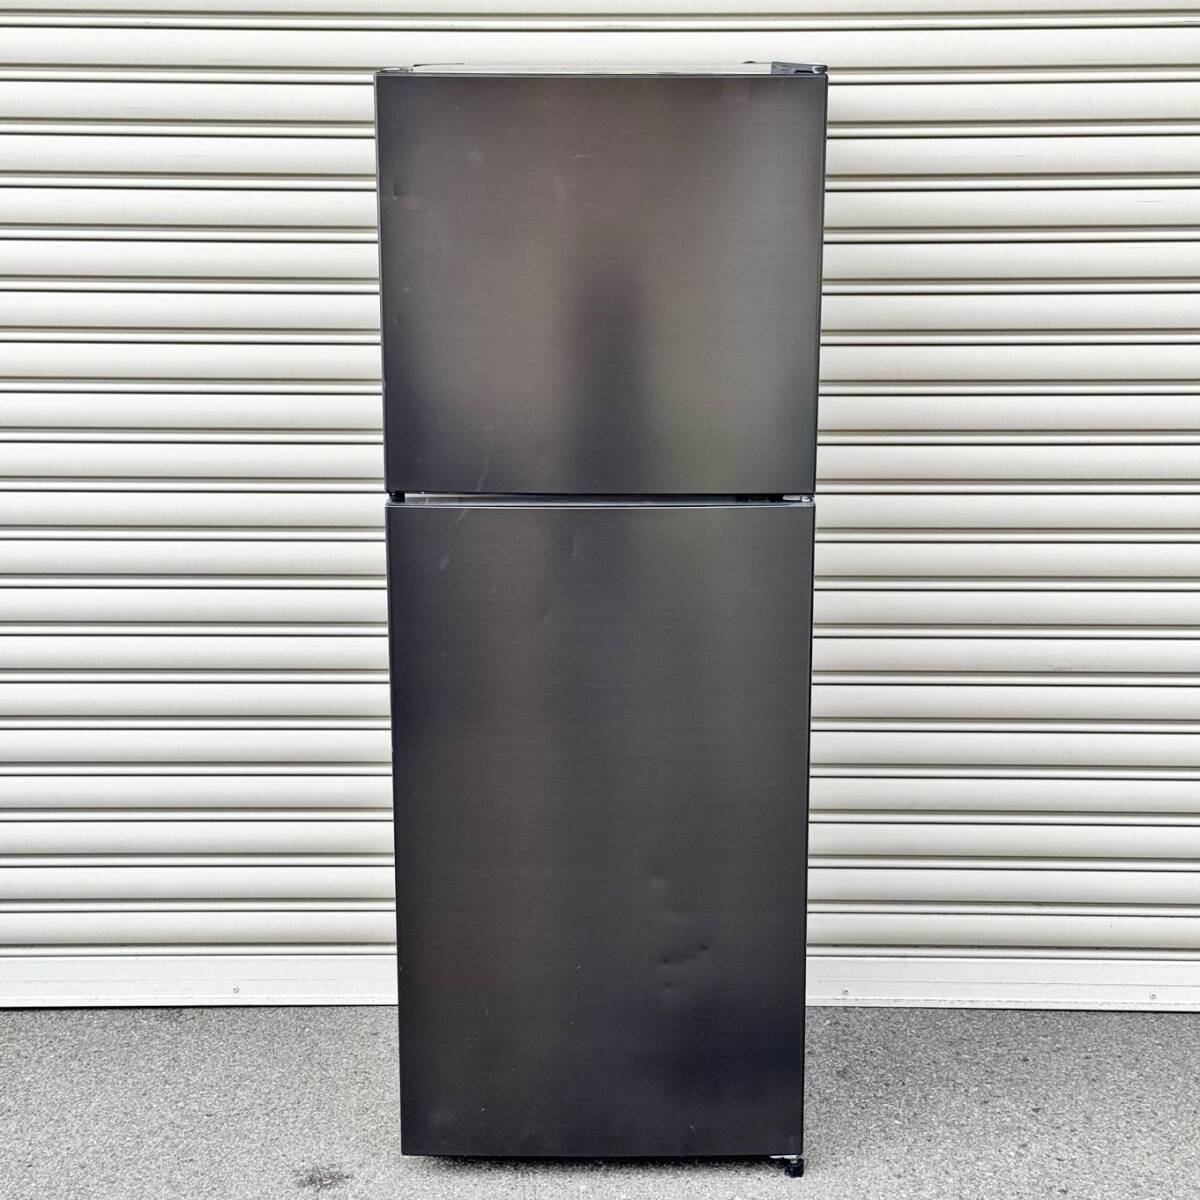 甲MJ17575 クリーニング済 動作確認済 2020年製 201L マクスゼン MAXZEN 冷凍冷蔵庫 2ドア冷蔵庫 JR200ML01GM ブラック 黒色の画像1